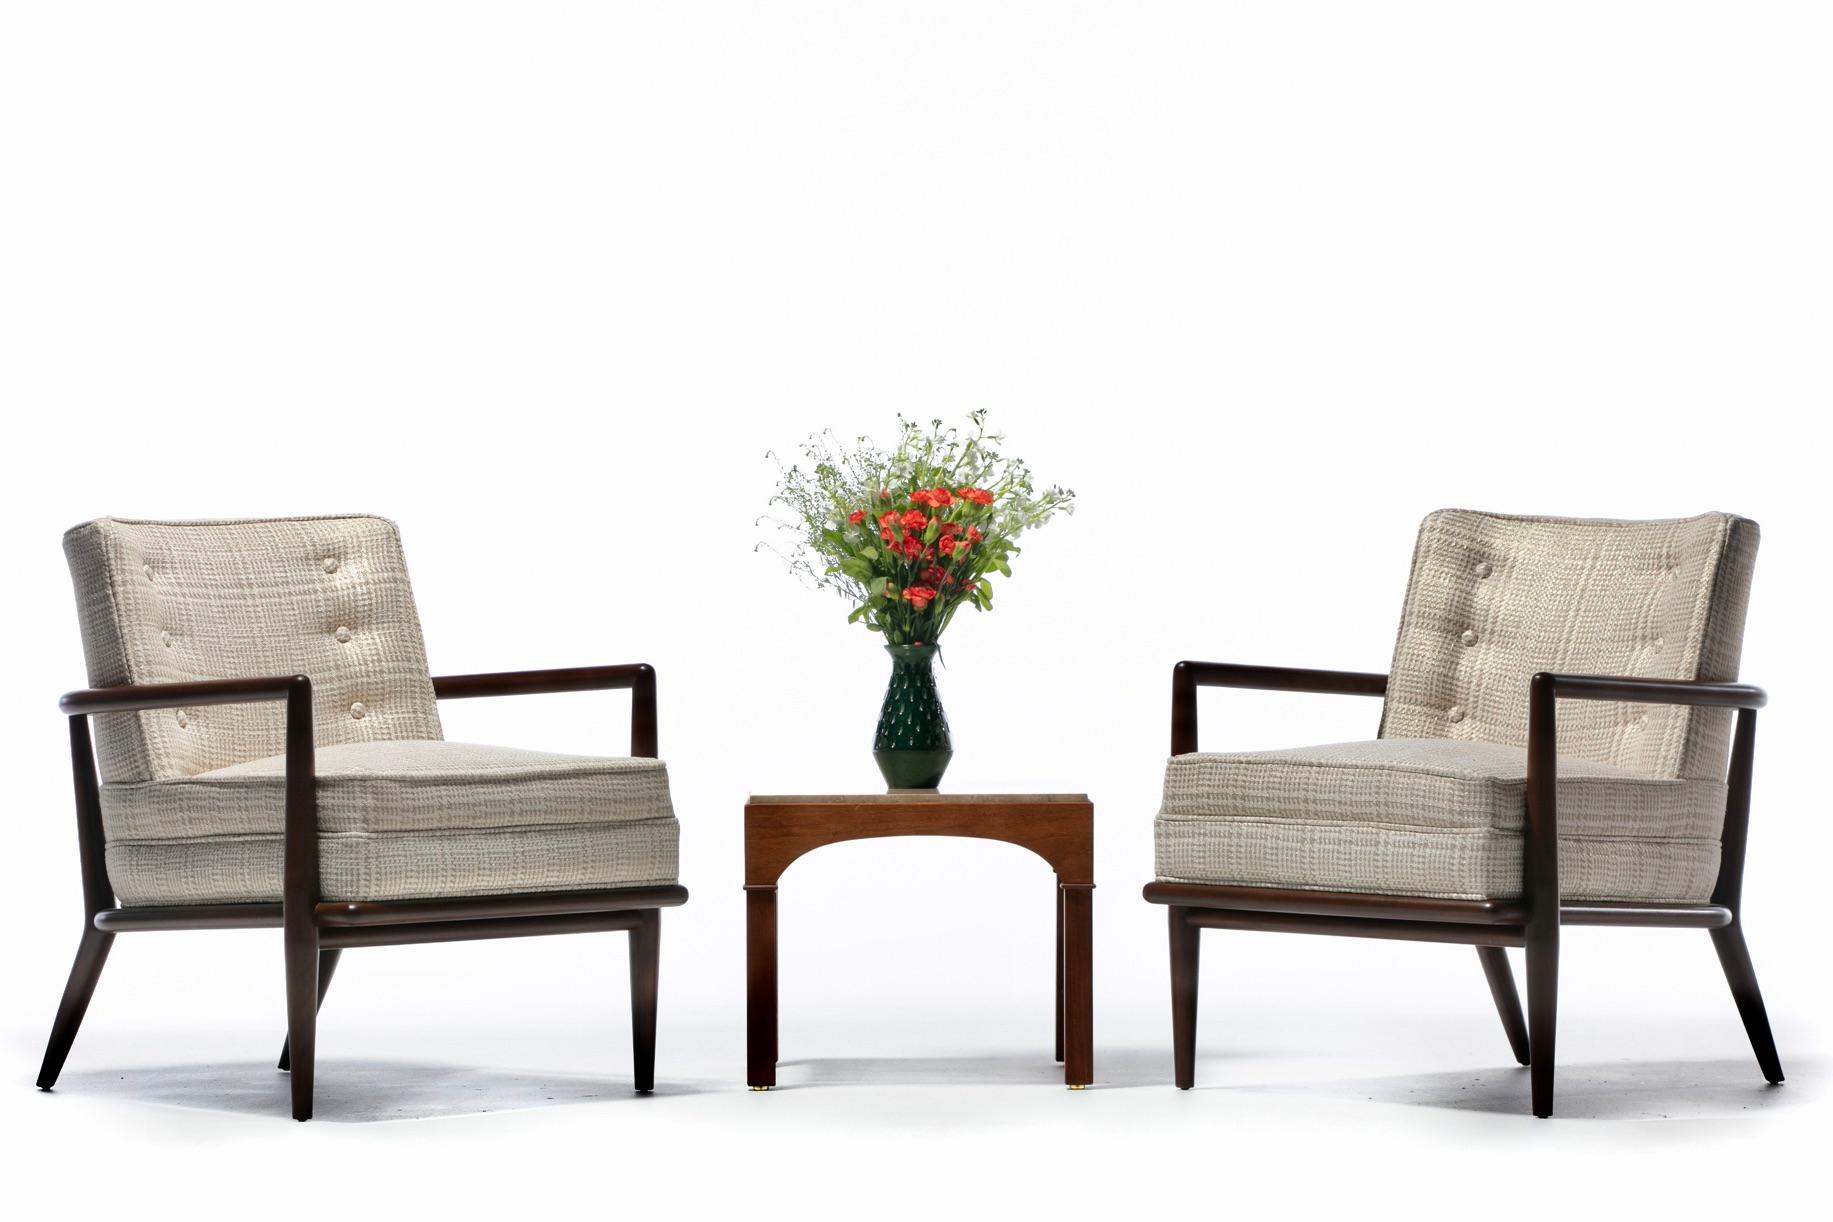 Paire de chaises longues iconiques en noyer des années 1950, conçues par T. H. Robsjohn-Gibbings et fabriquées par Widdicomb, récemment restaurées par des professionnels et retapissées dans un tissu Romo. Sexy et raffiné. Silhouette classique de la